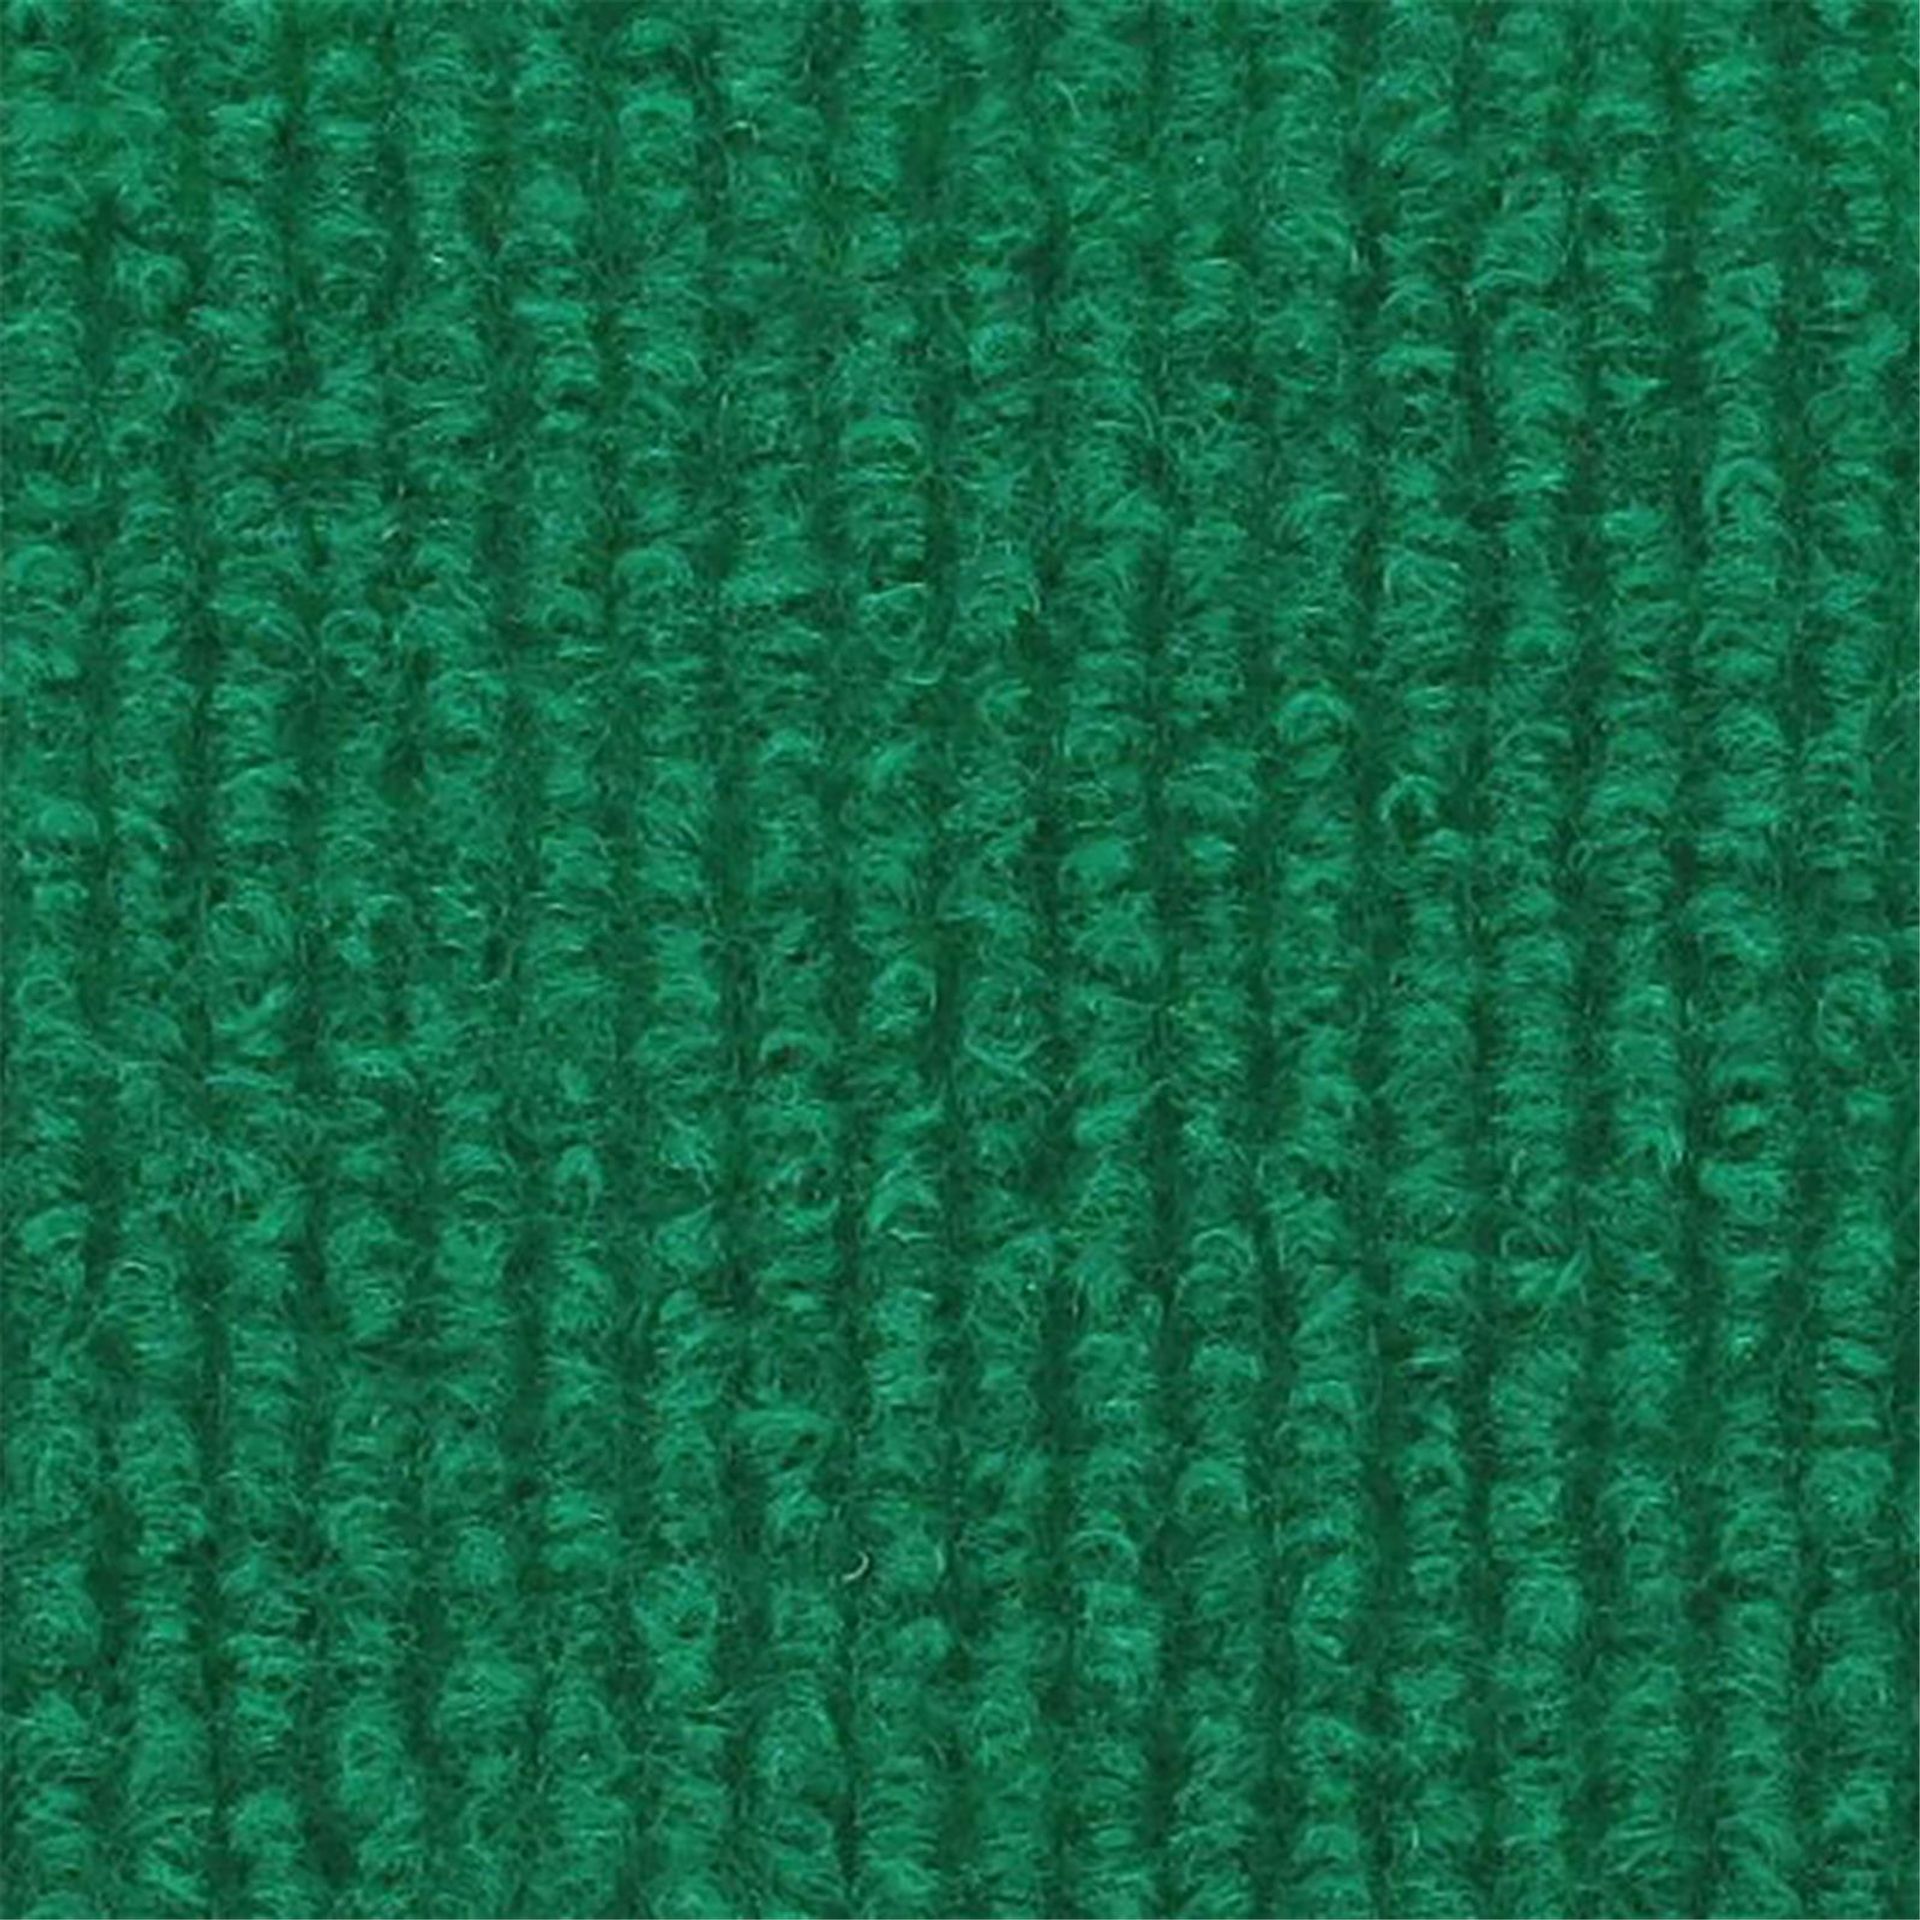 Messeboden Rips-Nadelvlies EXPOLINE Mid Green 0901 100qm ohne Schutzfolie - Rollenbreite 200 cm